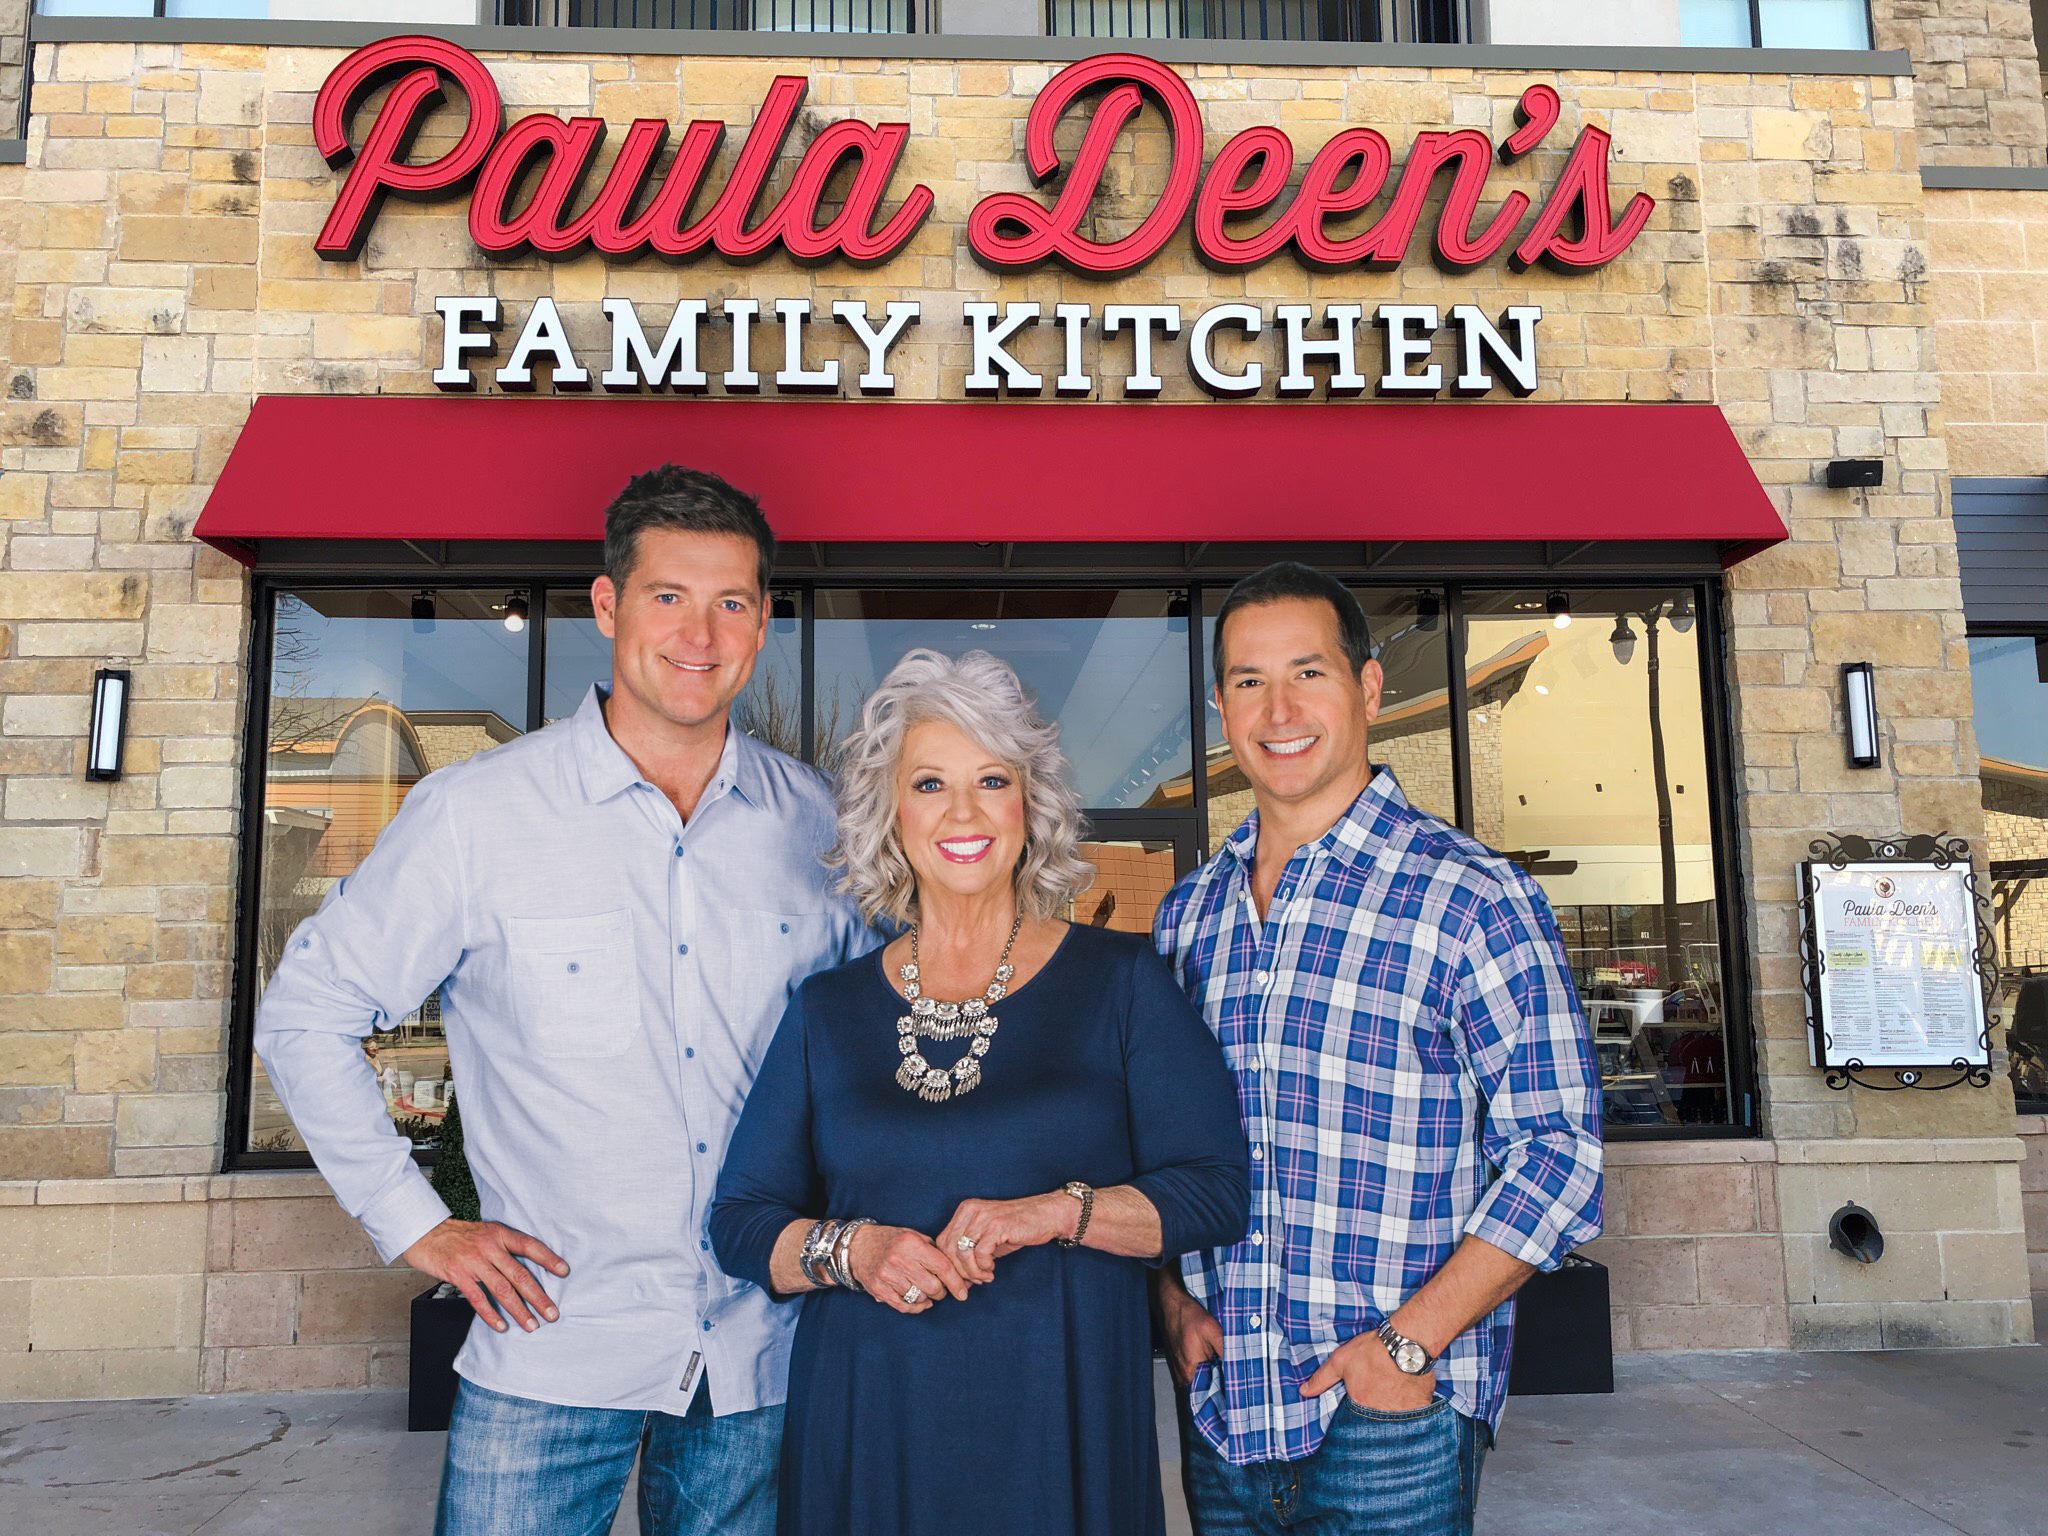 Paula Deen's Family Kitchen at Fairview Town Center | Paula Deen's ...